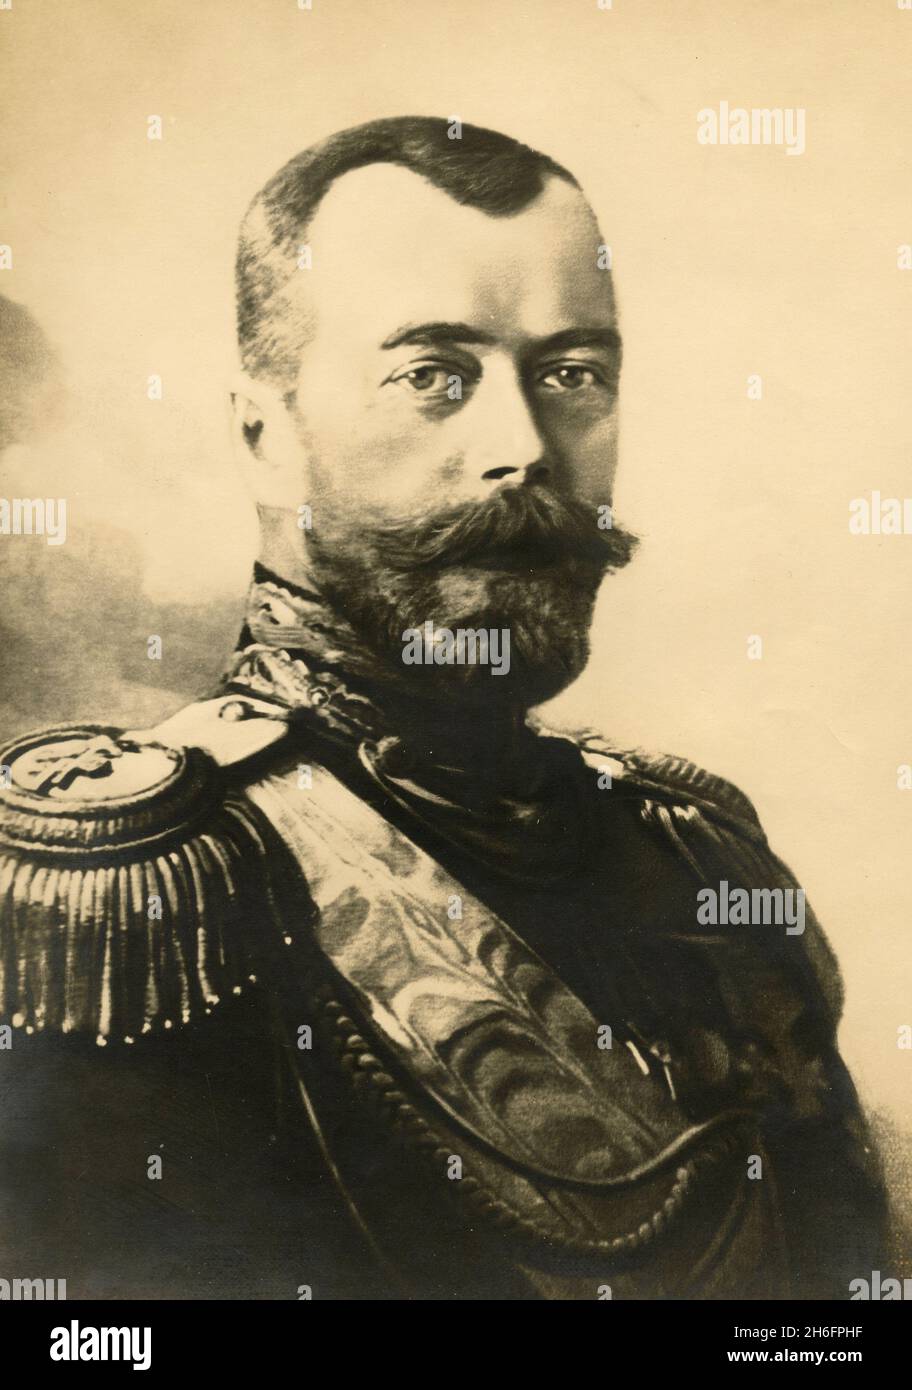 Portrait du tsar Nicolas II Romanov de Russie, années 1910 Banque D'Images